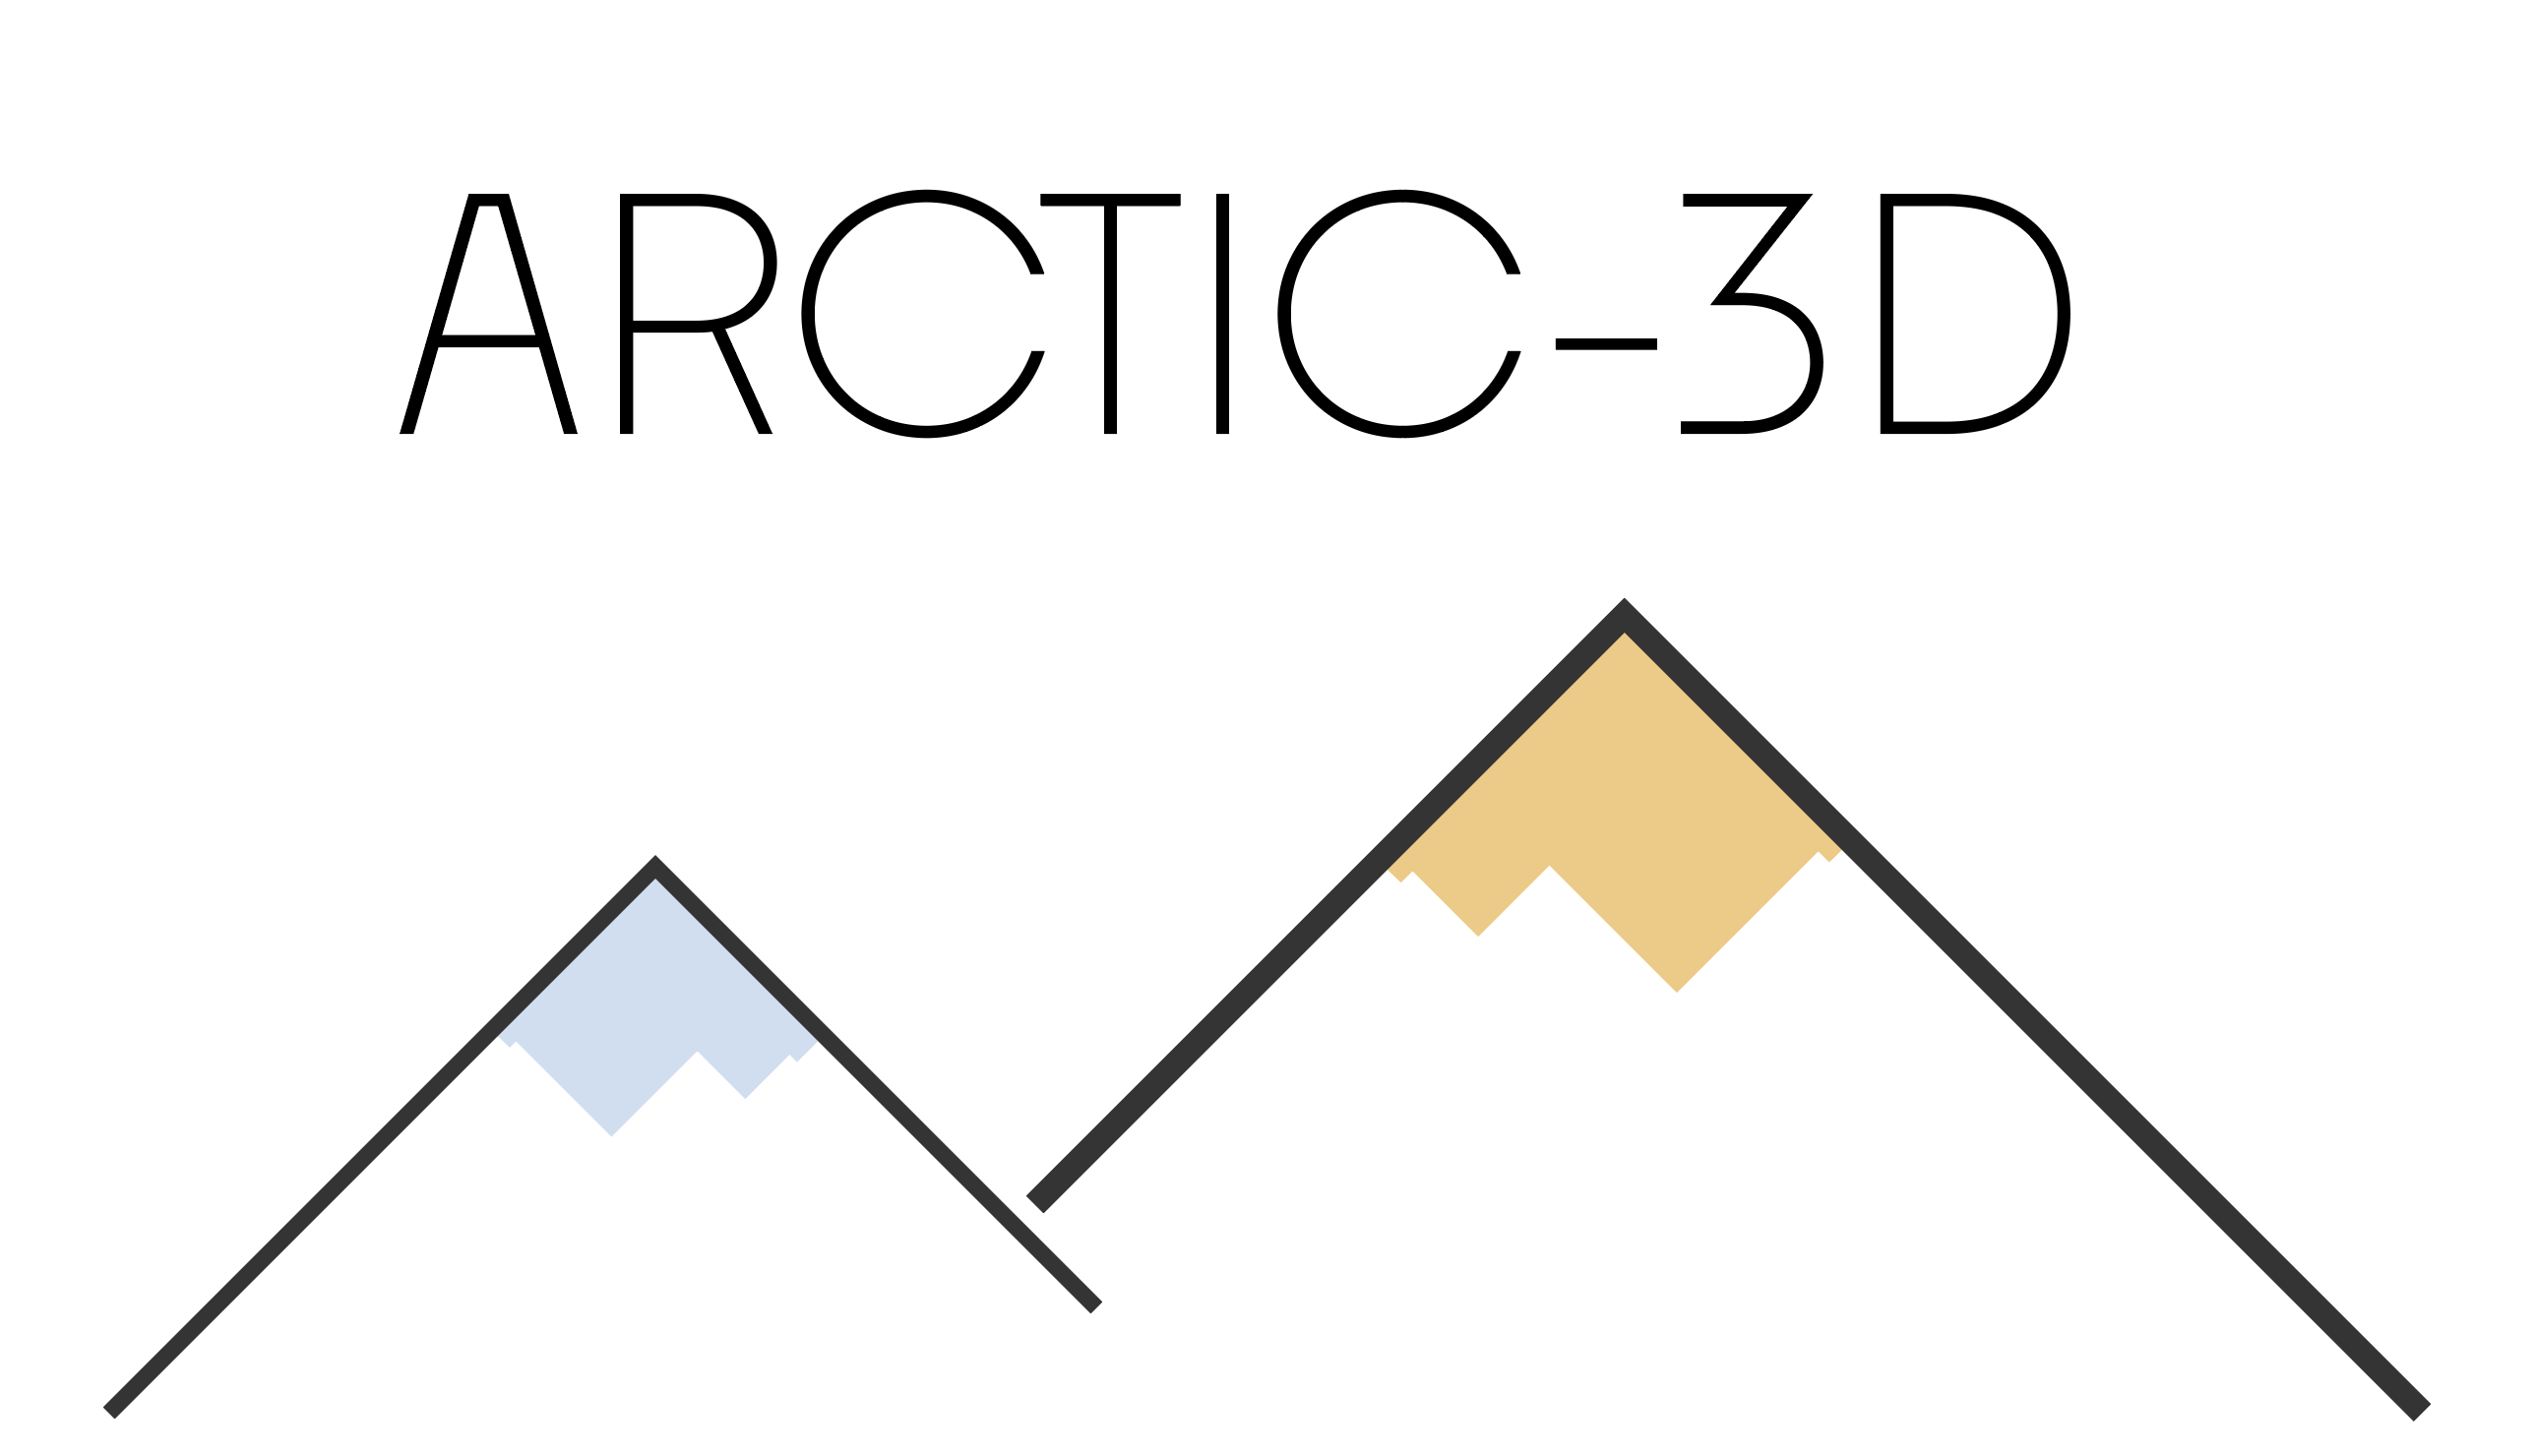 Arctic3D logo